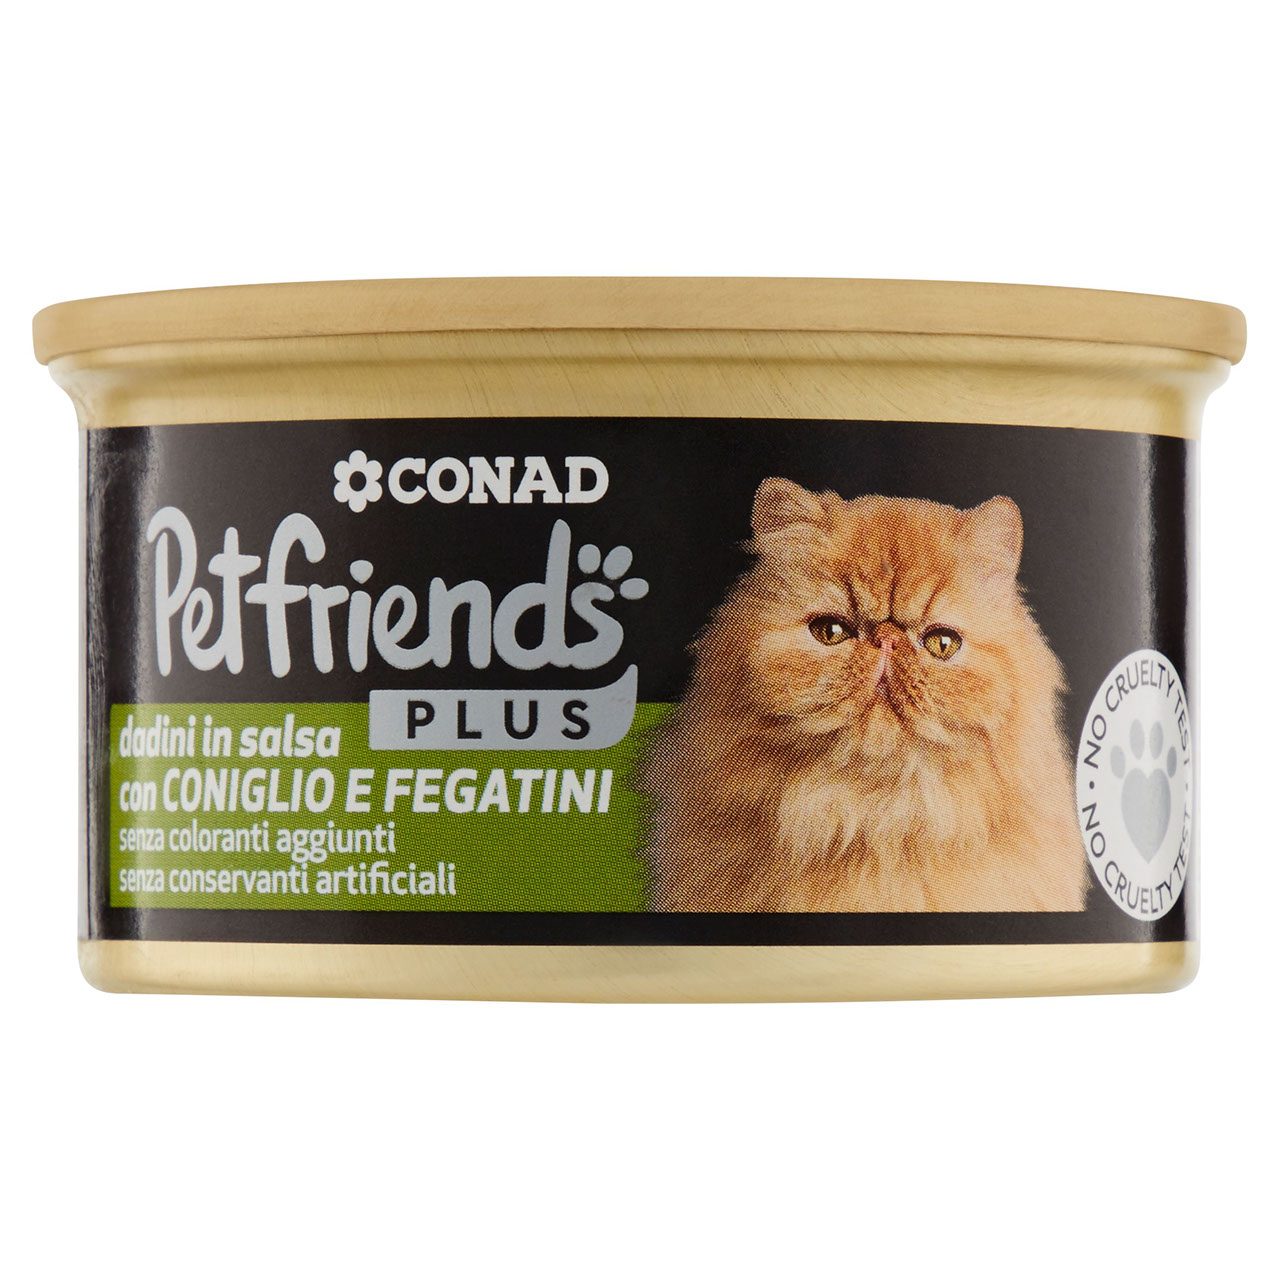 Petfriends Plus Dadini Coniglio e Fegato 85g Conad